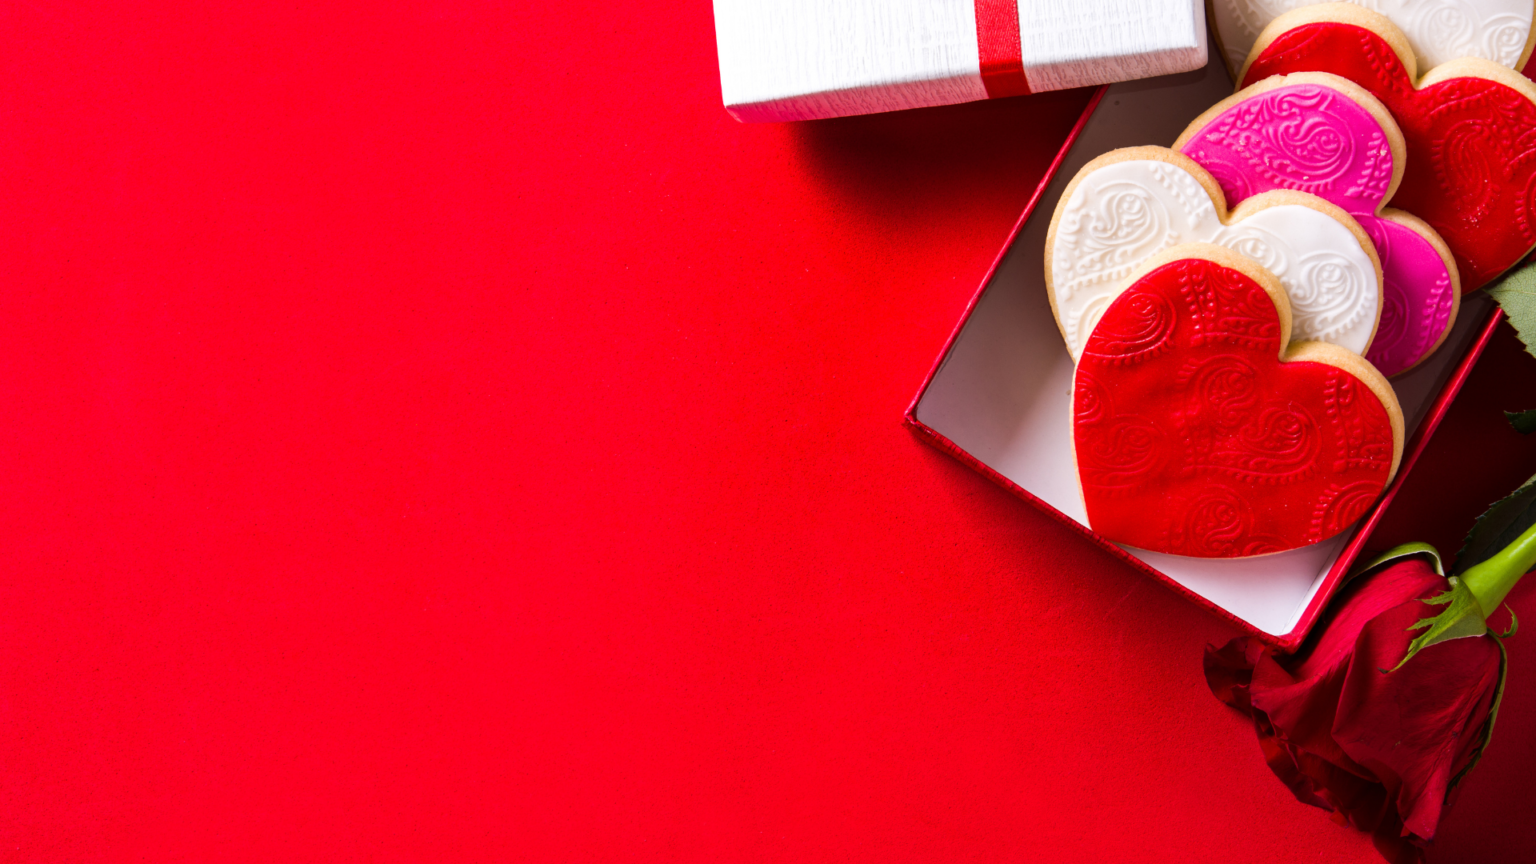 Dulces para regalar en San Valentín - 5 opciones increíbles